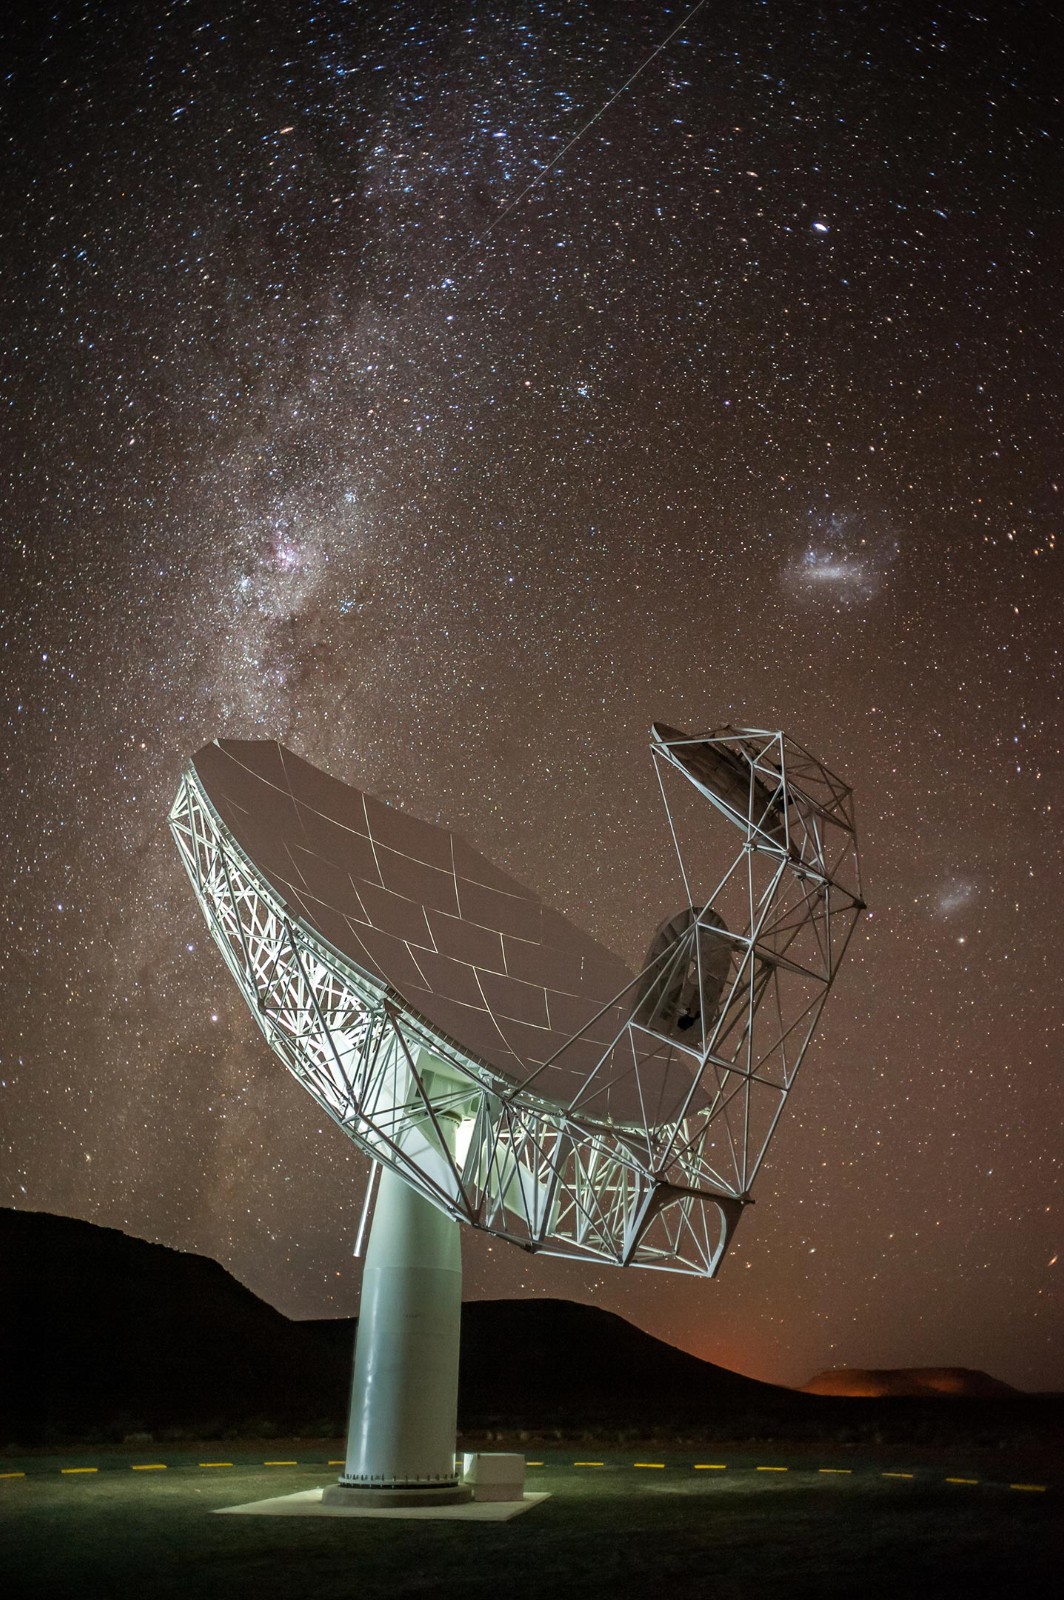 “巨型激光器”：南非MeerKAT望远镜观测到一个强大的无线电波激光器